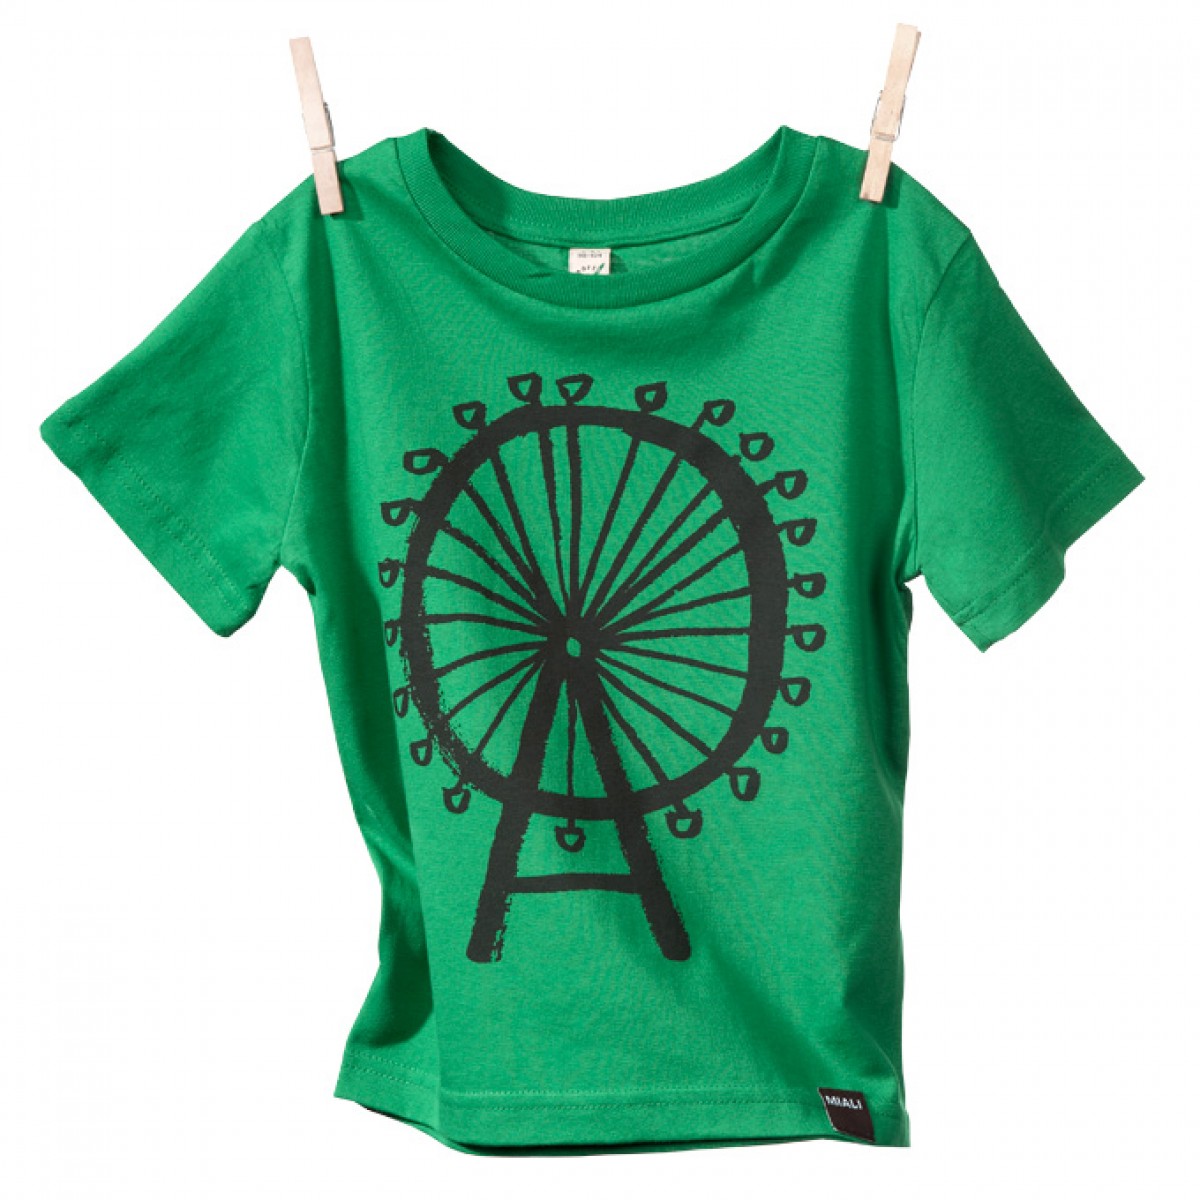 Bio-Baumwoll Shirt für Kleine / Riesenrad (grün)